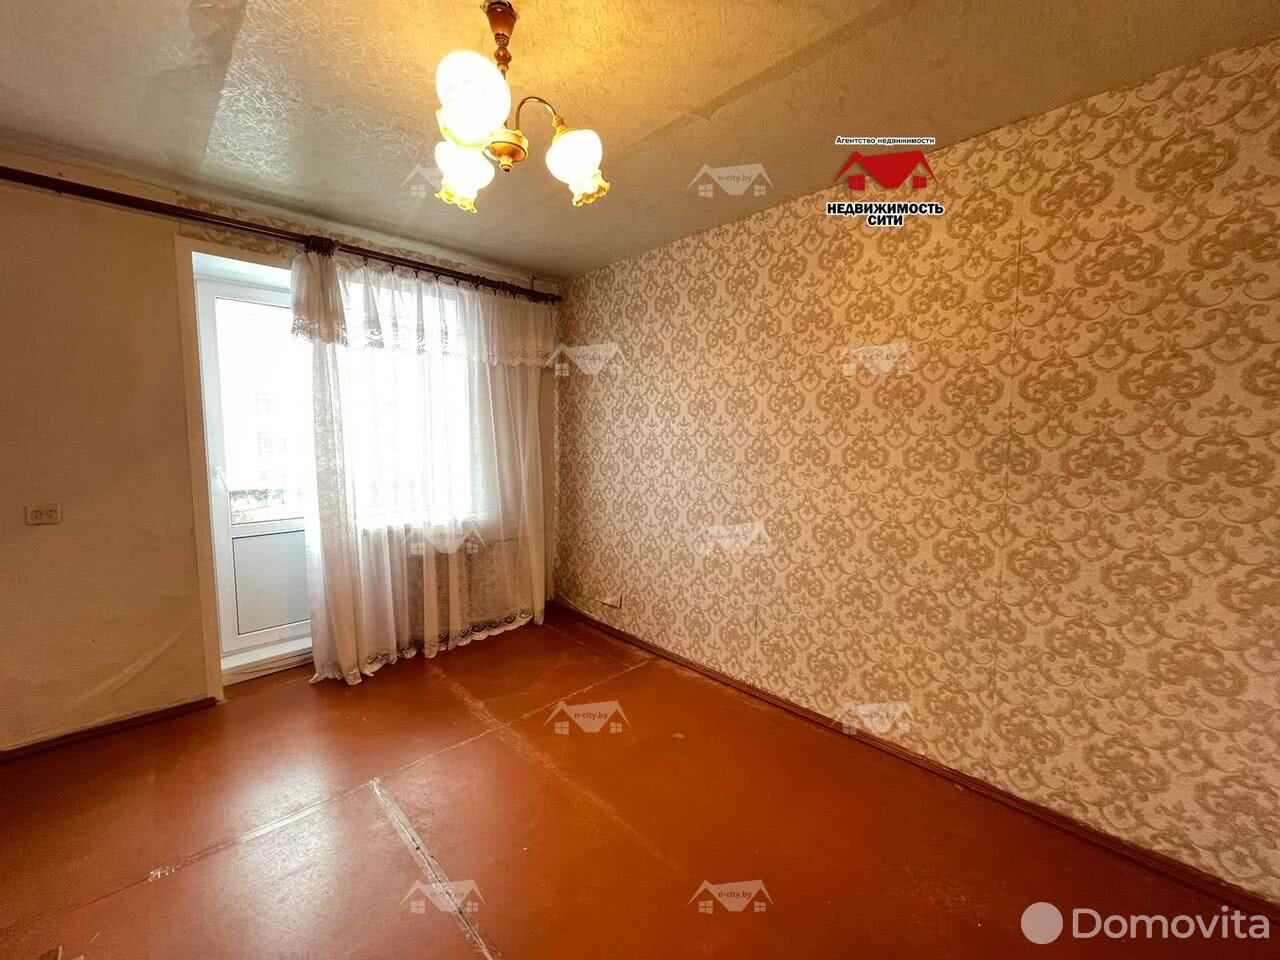 Стоимость продажи квартиры, Рогачев, ул. Набережная, д. 83